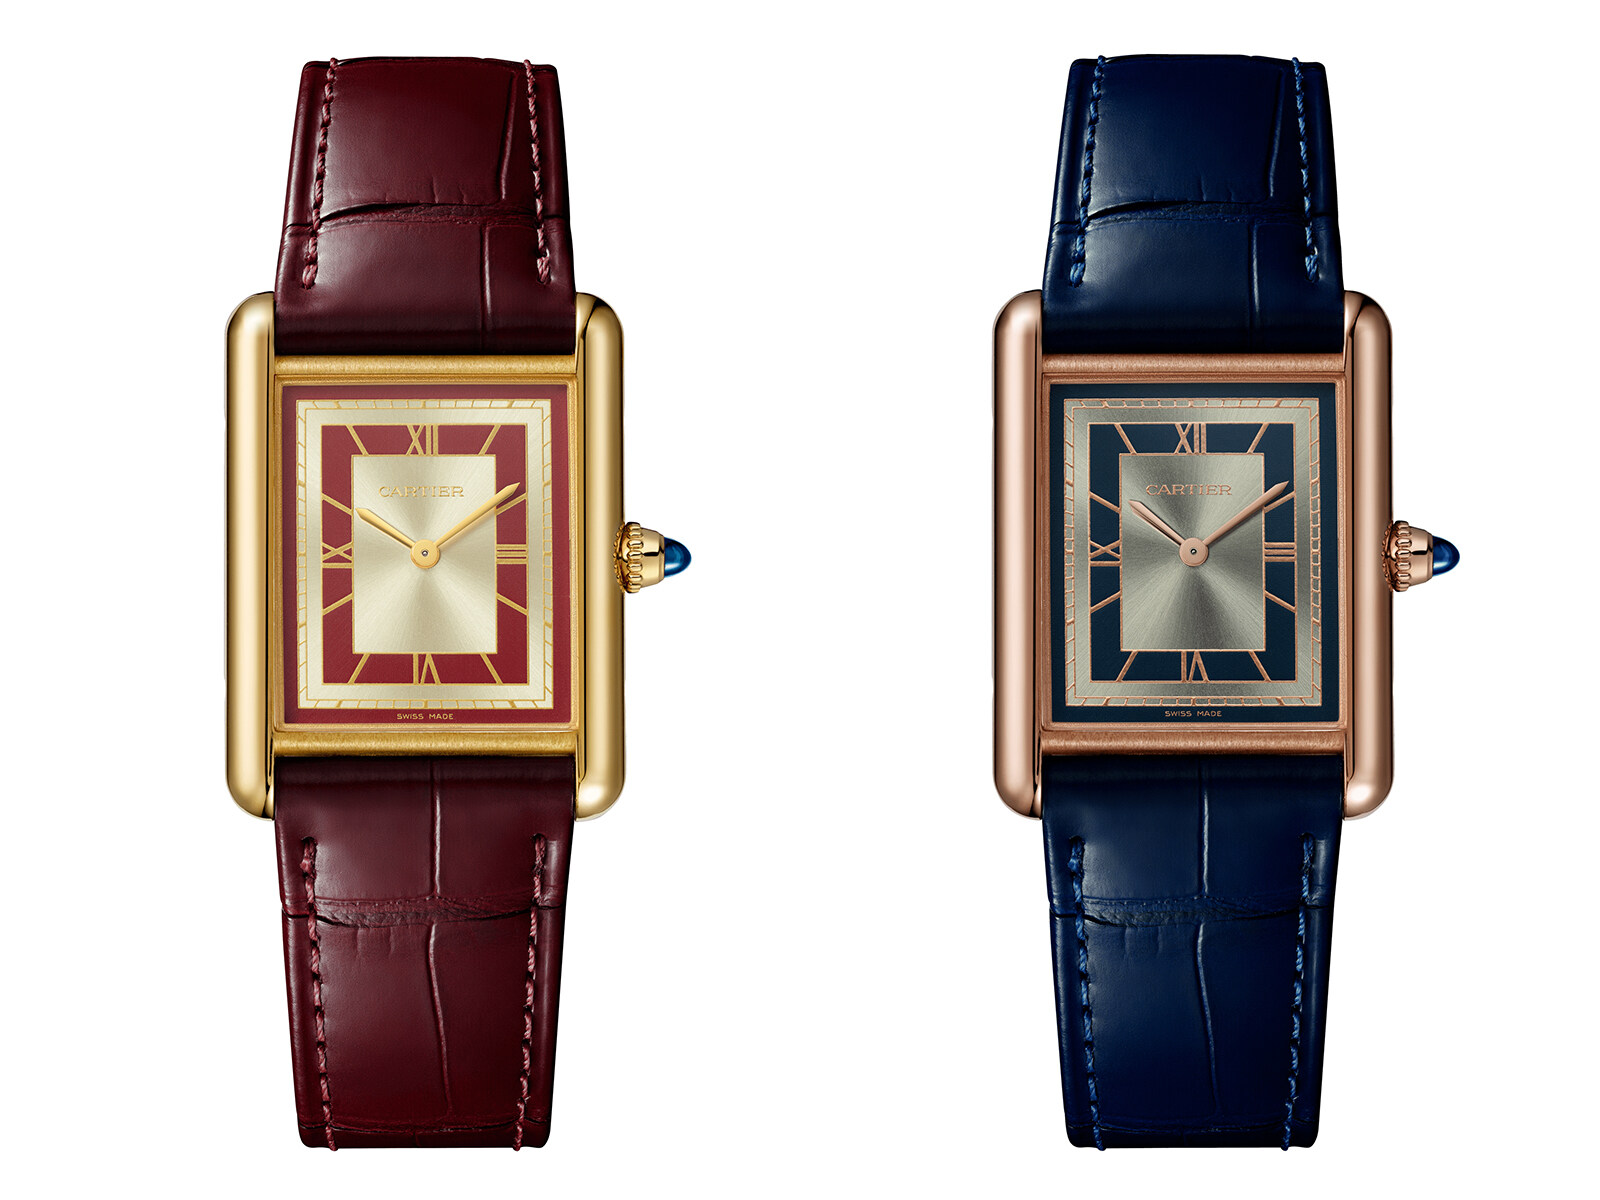 新款的Tank Louis Cartier系列腕錶沿用了原創者Louis Cartier奠定的基本美學元素，包括凸